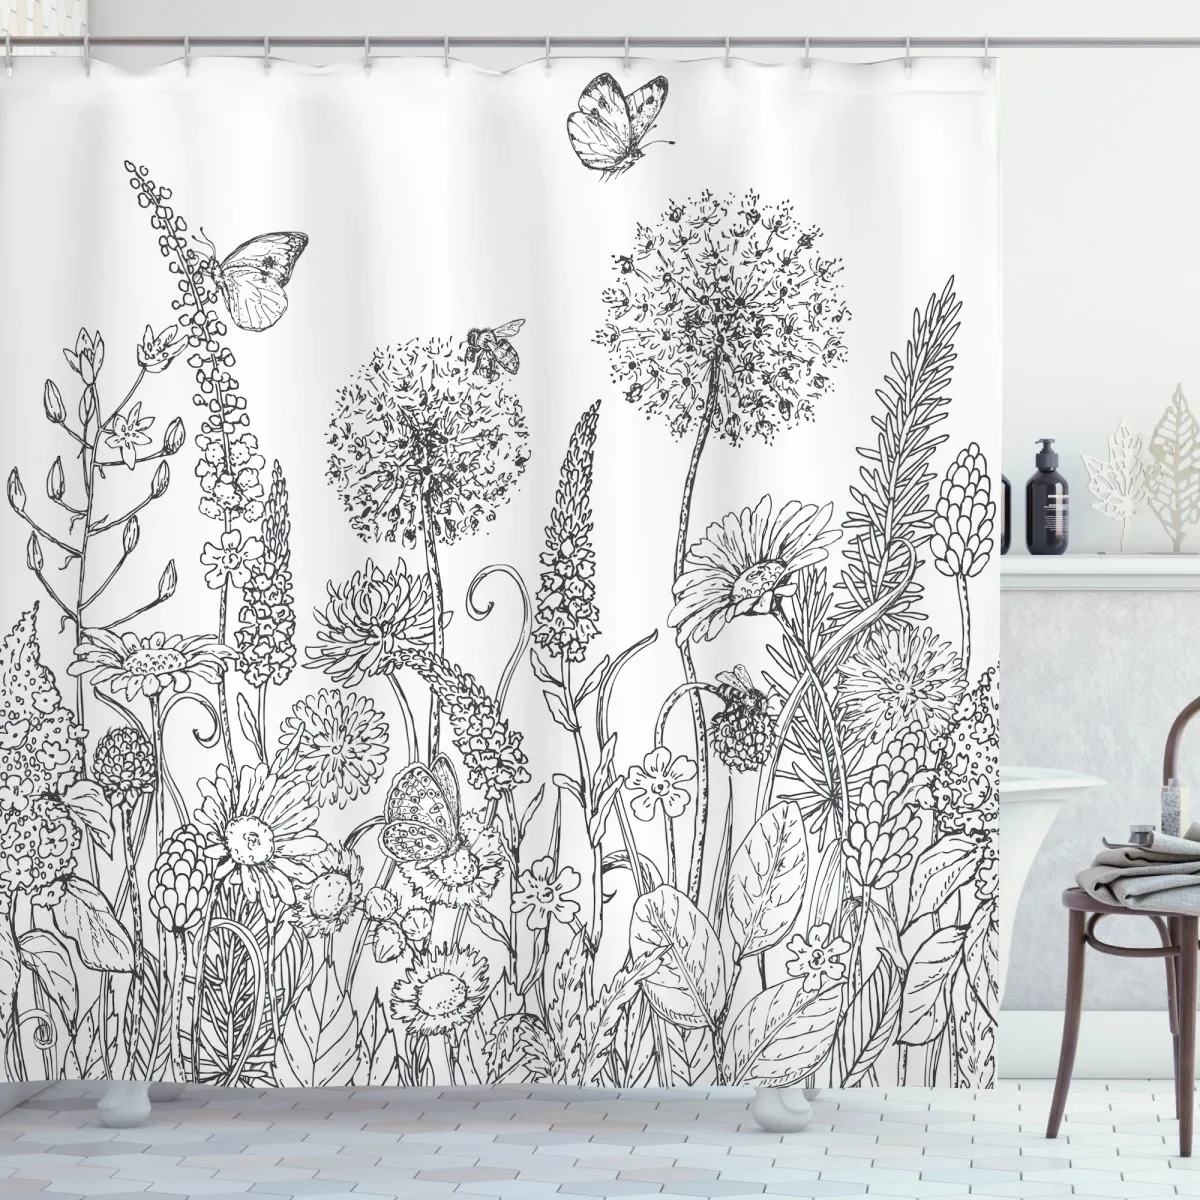 Flower душ завеси ръчно рисувани черно бели растения флорални глухарче пеперуда листа отпечатъци баня декор плат завеси